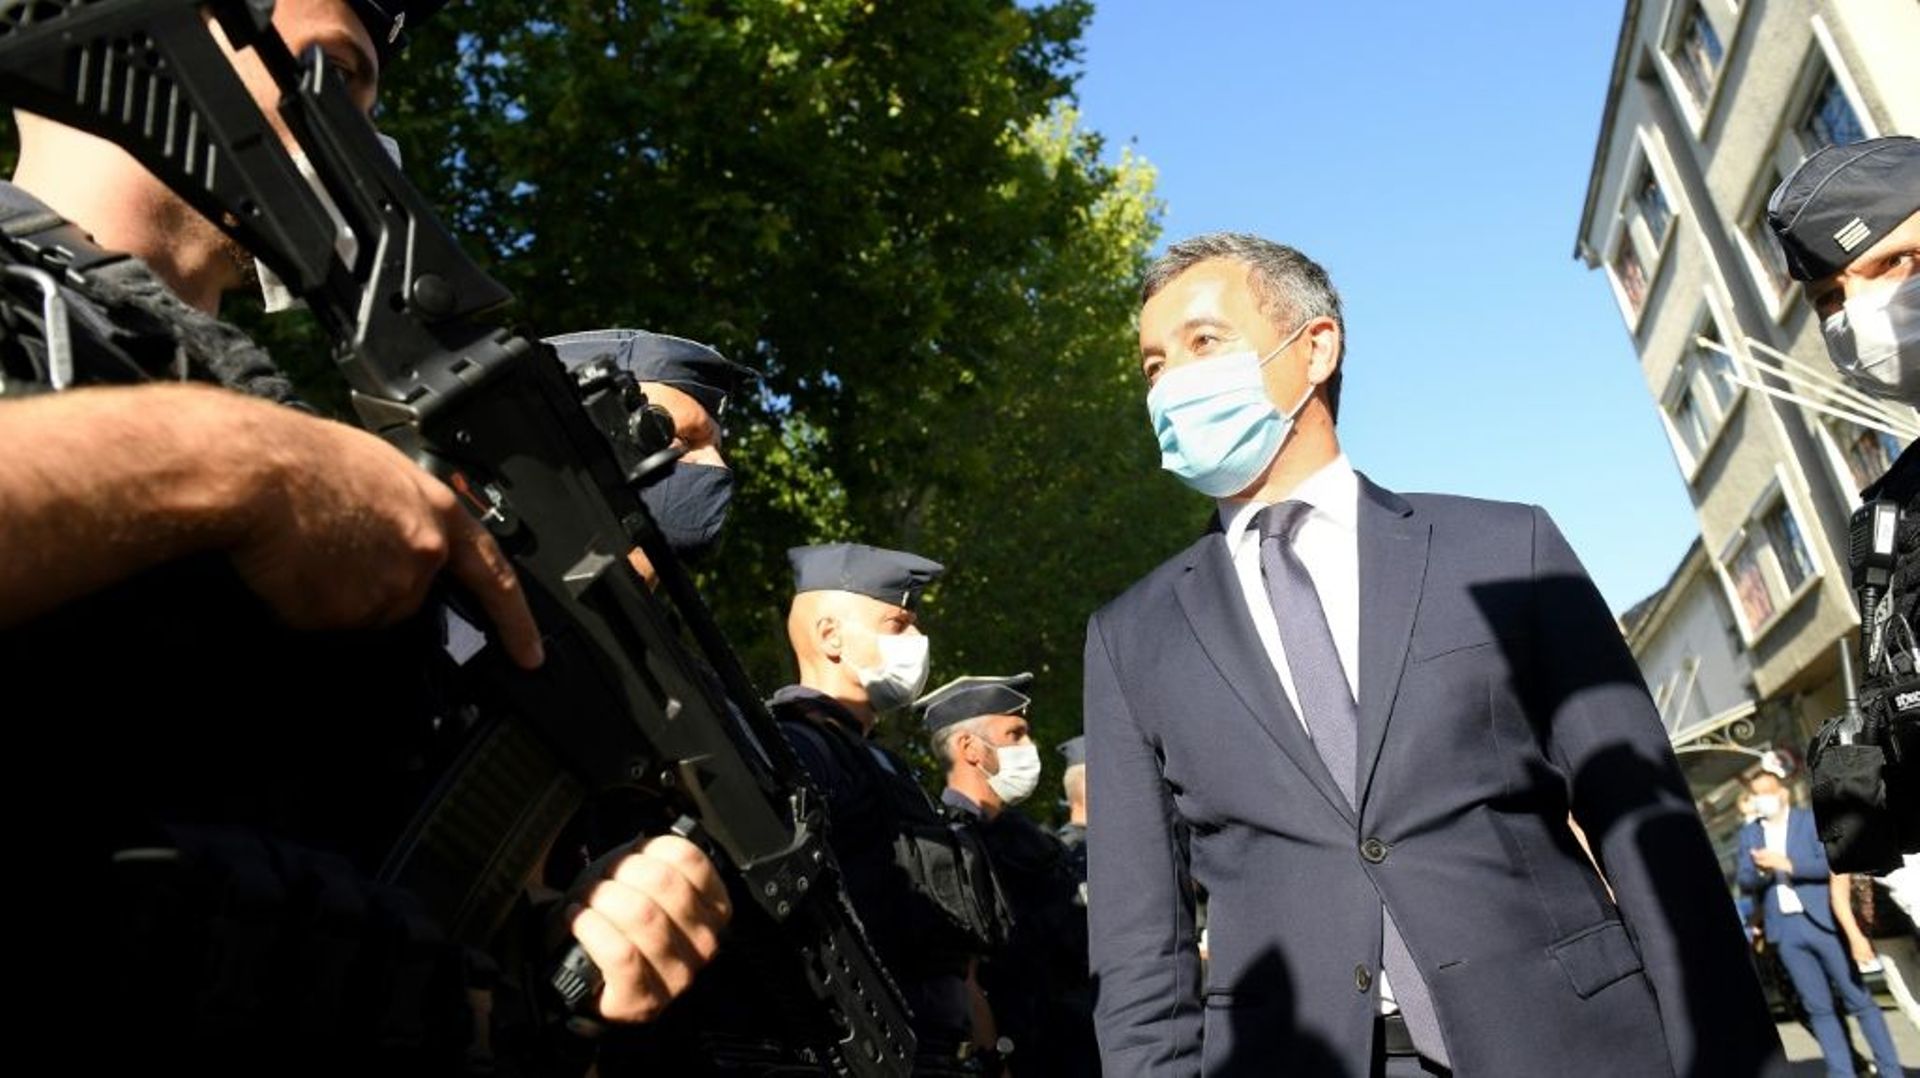 Le ministre de l’Intérieur, Gérald Darmanin, lors d’une visite auprès de policiers à Cavaillon, le 16 août 2021